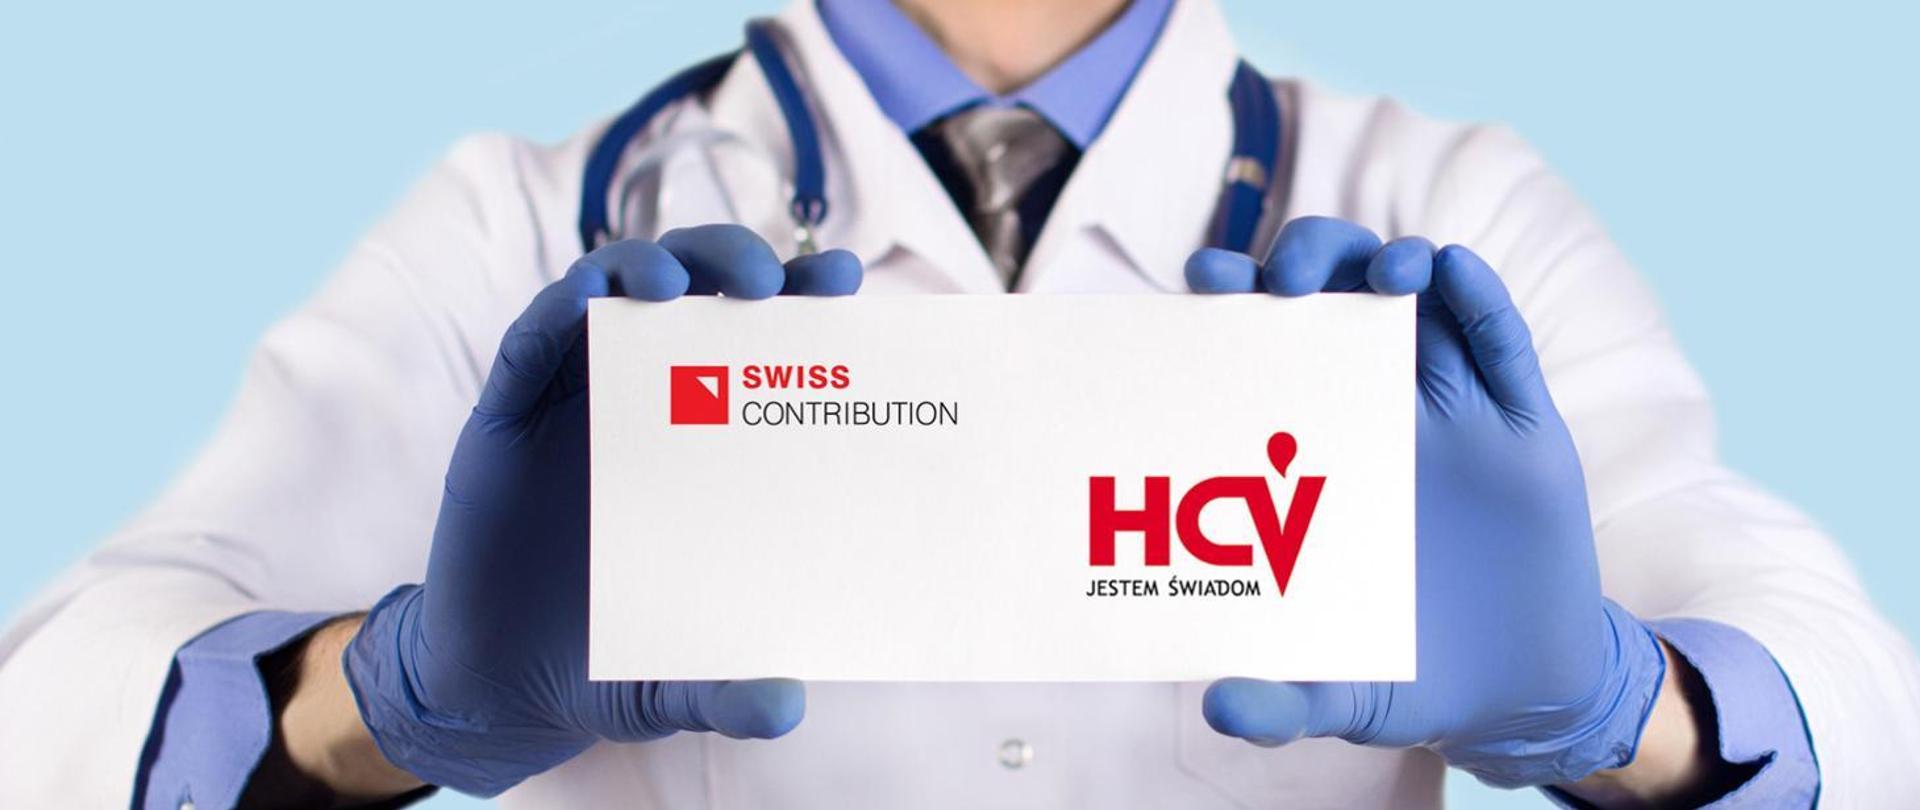 Zdjęcie nagłówkowe. Postać lekarza trzymająca białą kartkę w rozmiarze wizytówki. Na kartce czerwony napis HCV.Jestem świadom